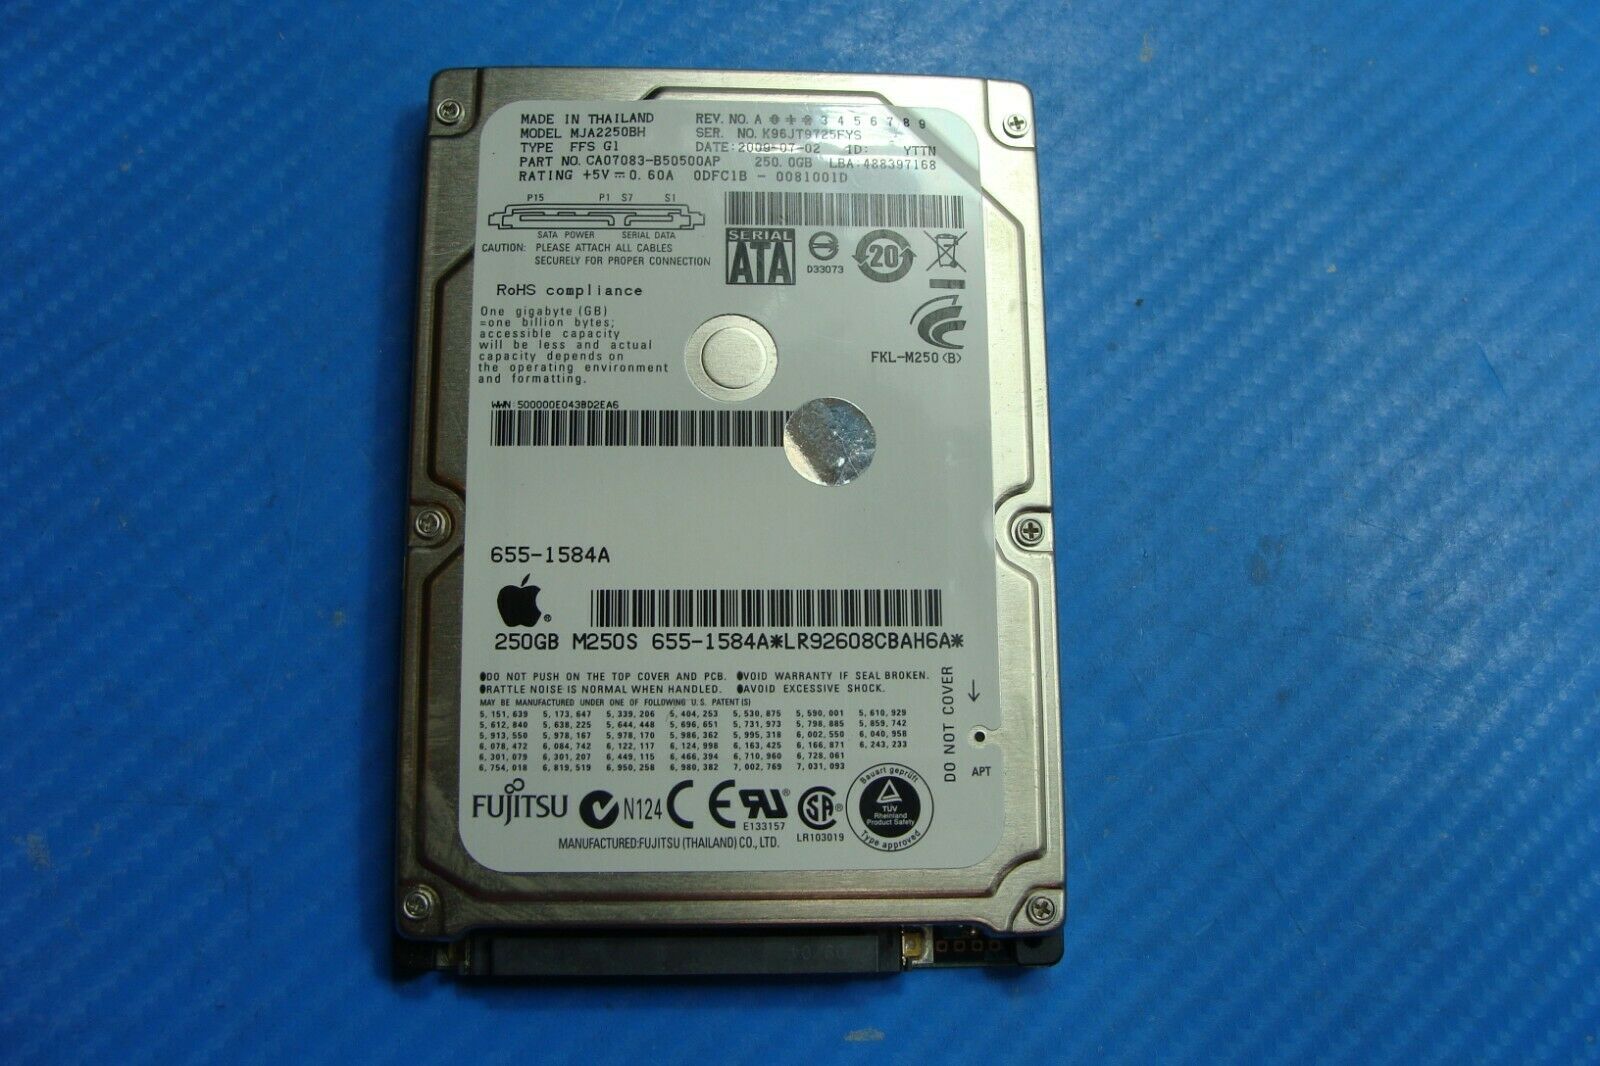 MacBook Pro A1297 17" Fujitsu 250GB Sata 2.5" HDD Drive mja2250bh 655-1546a 